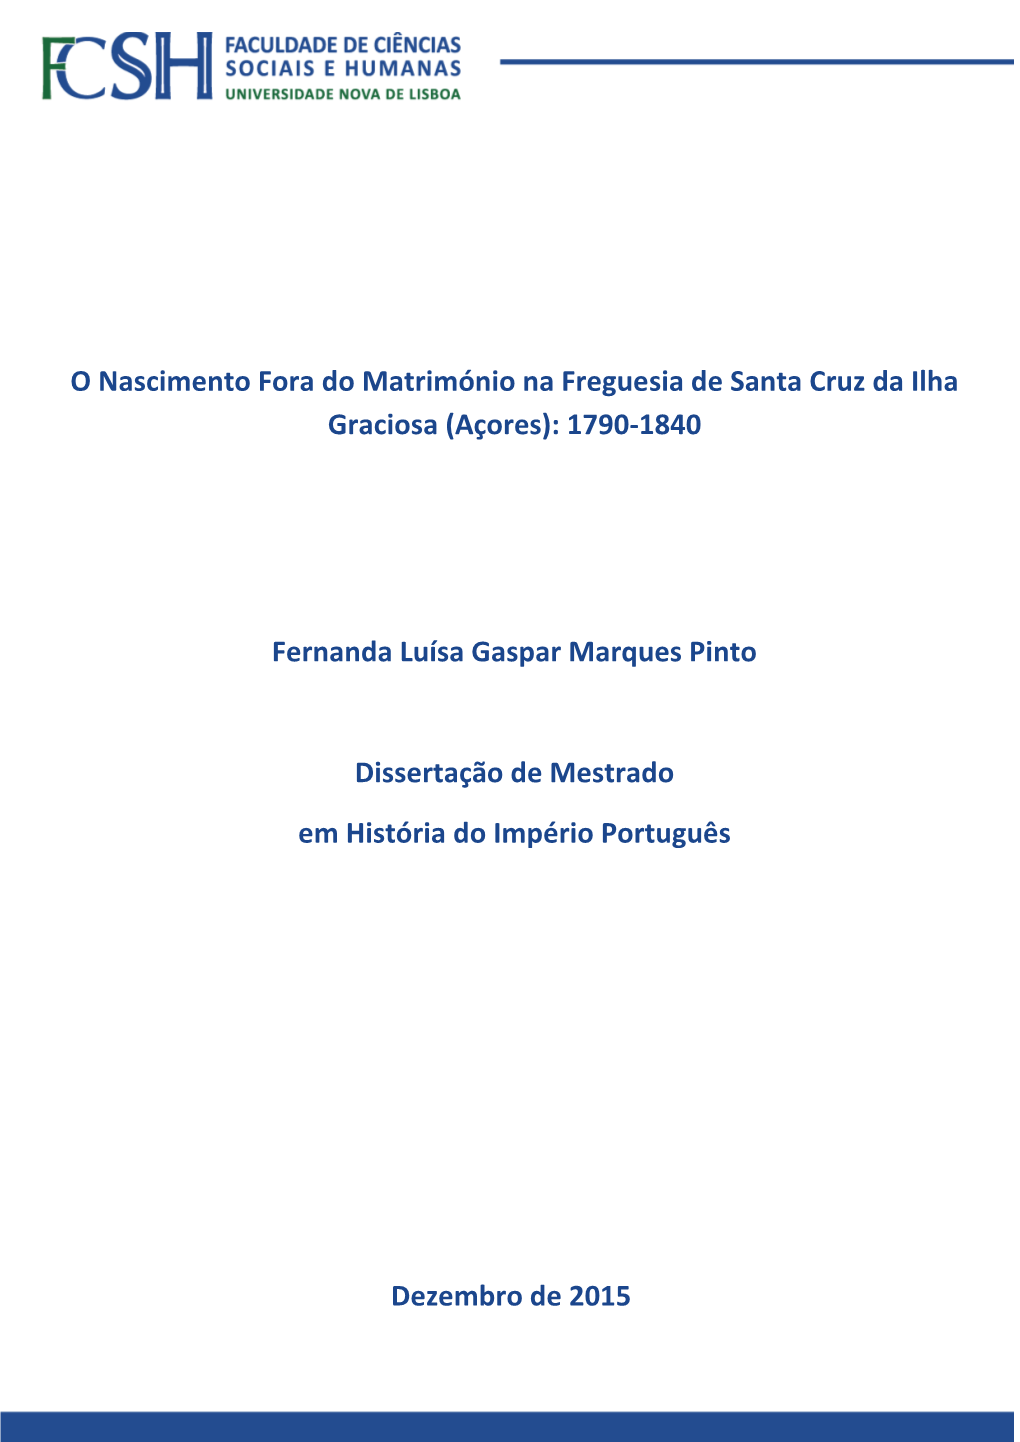 O Nascimento Fora Do Matrimónio Na Freguesia De Santa Cruz Da Ilha Graciosa (Açores): 1790-1840